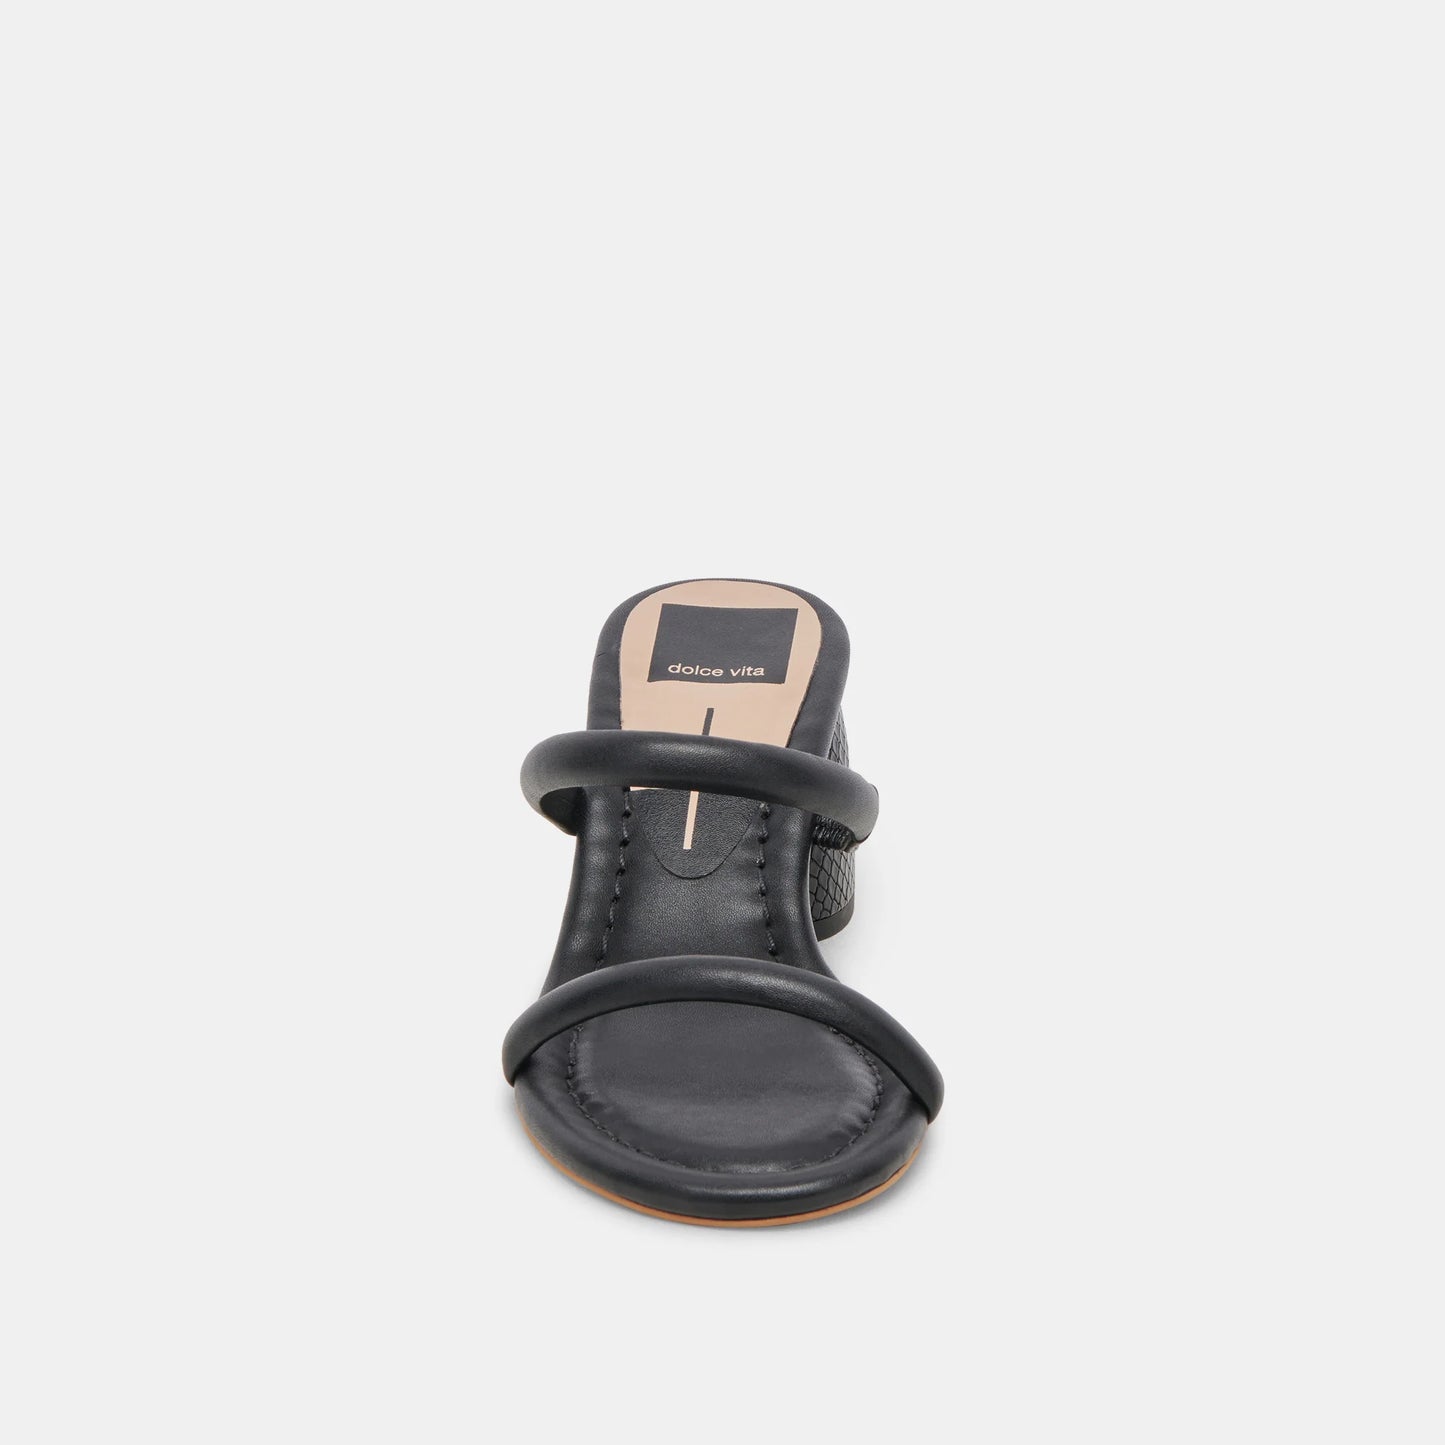 SHOES - DOLCE VITA - Two Strap Sandal - PLENTY